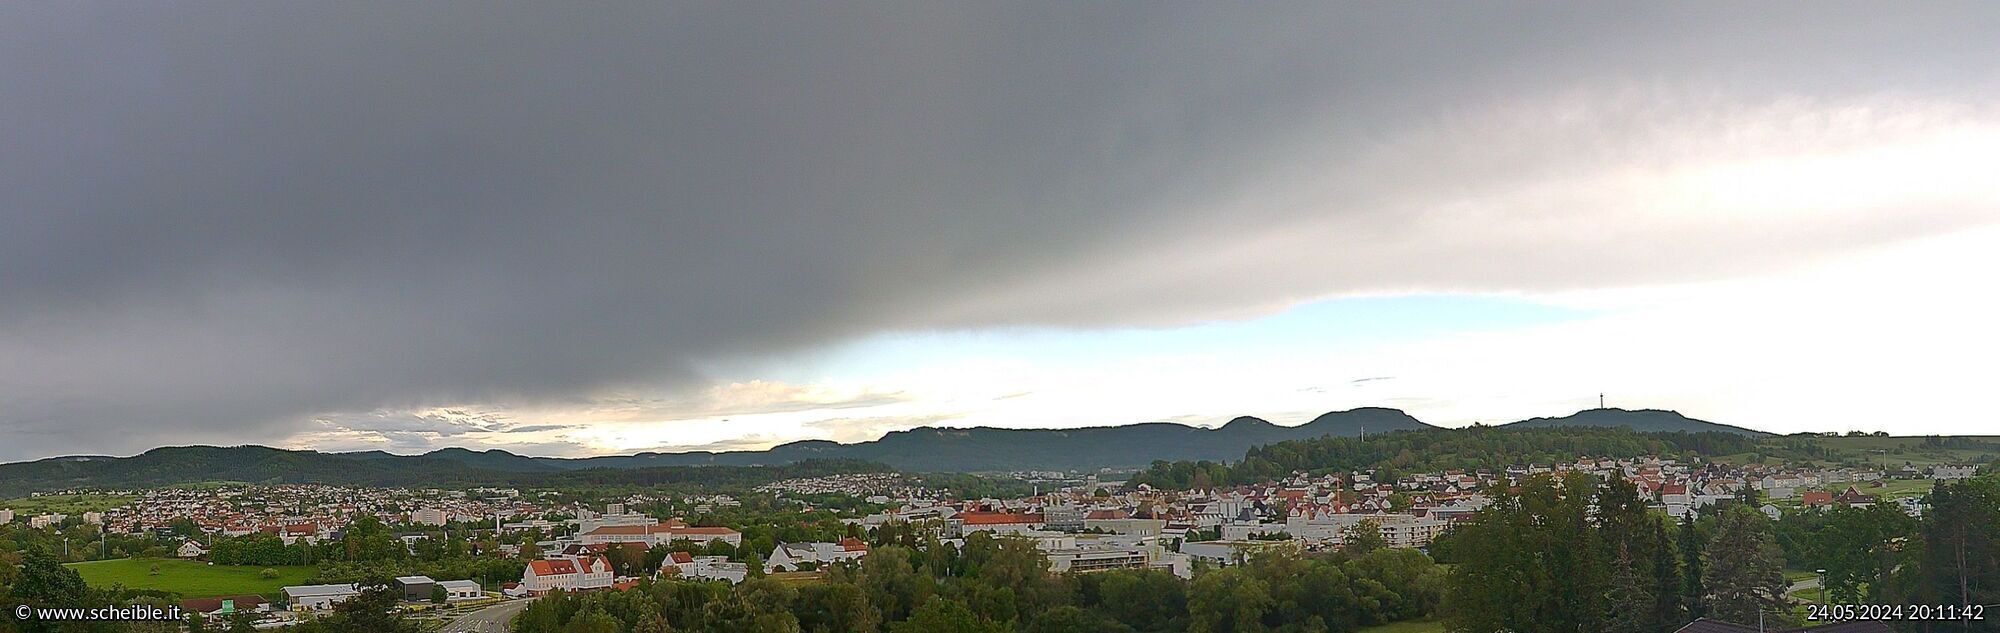 Webcam Stadt Balingen - Blick auf die Innenstadt und den Kirchturm